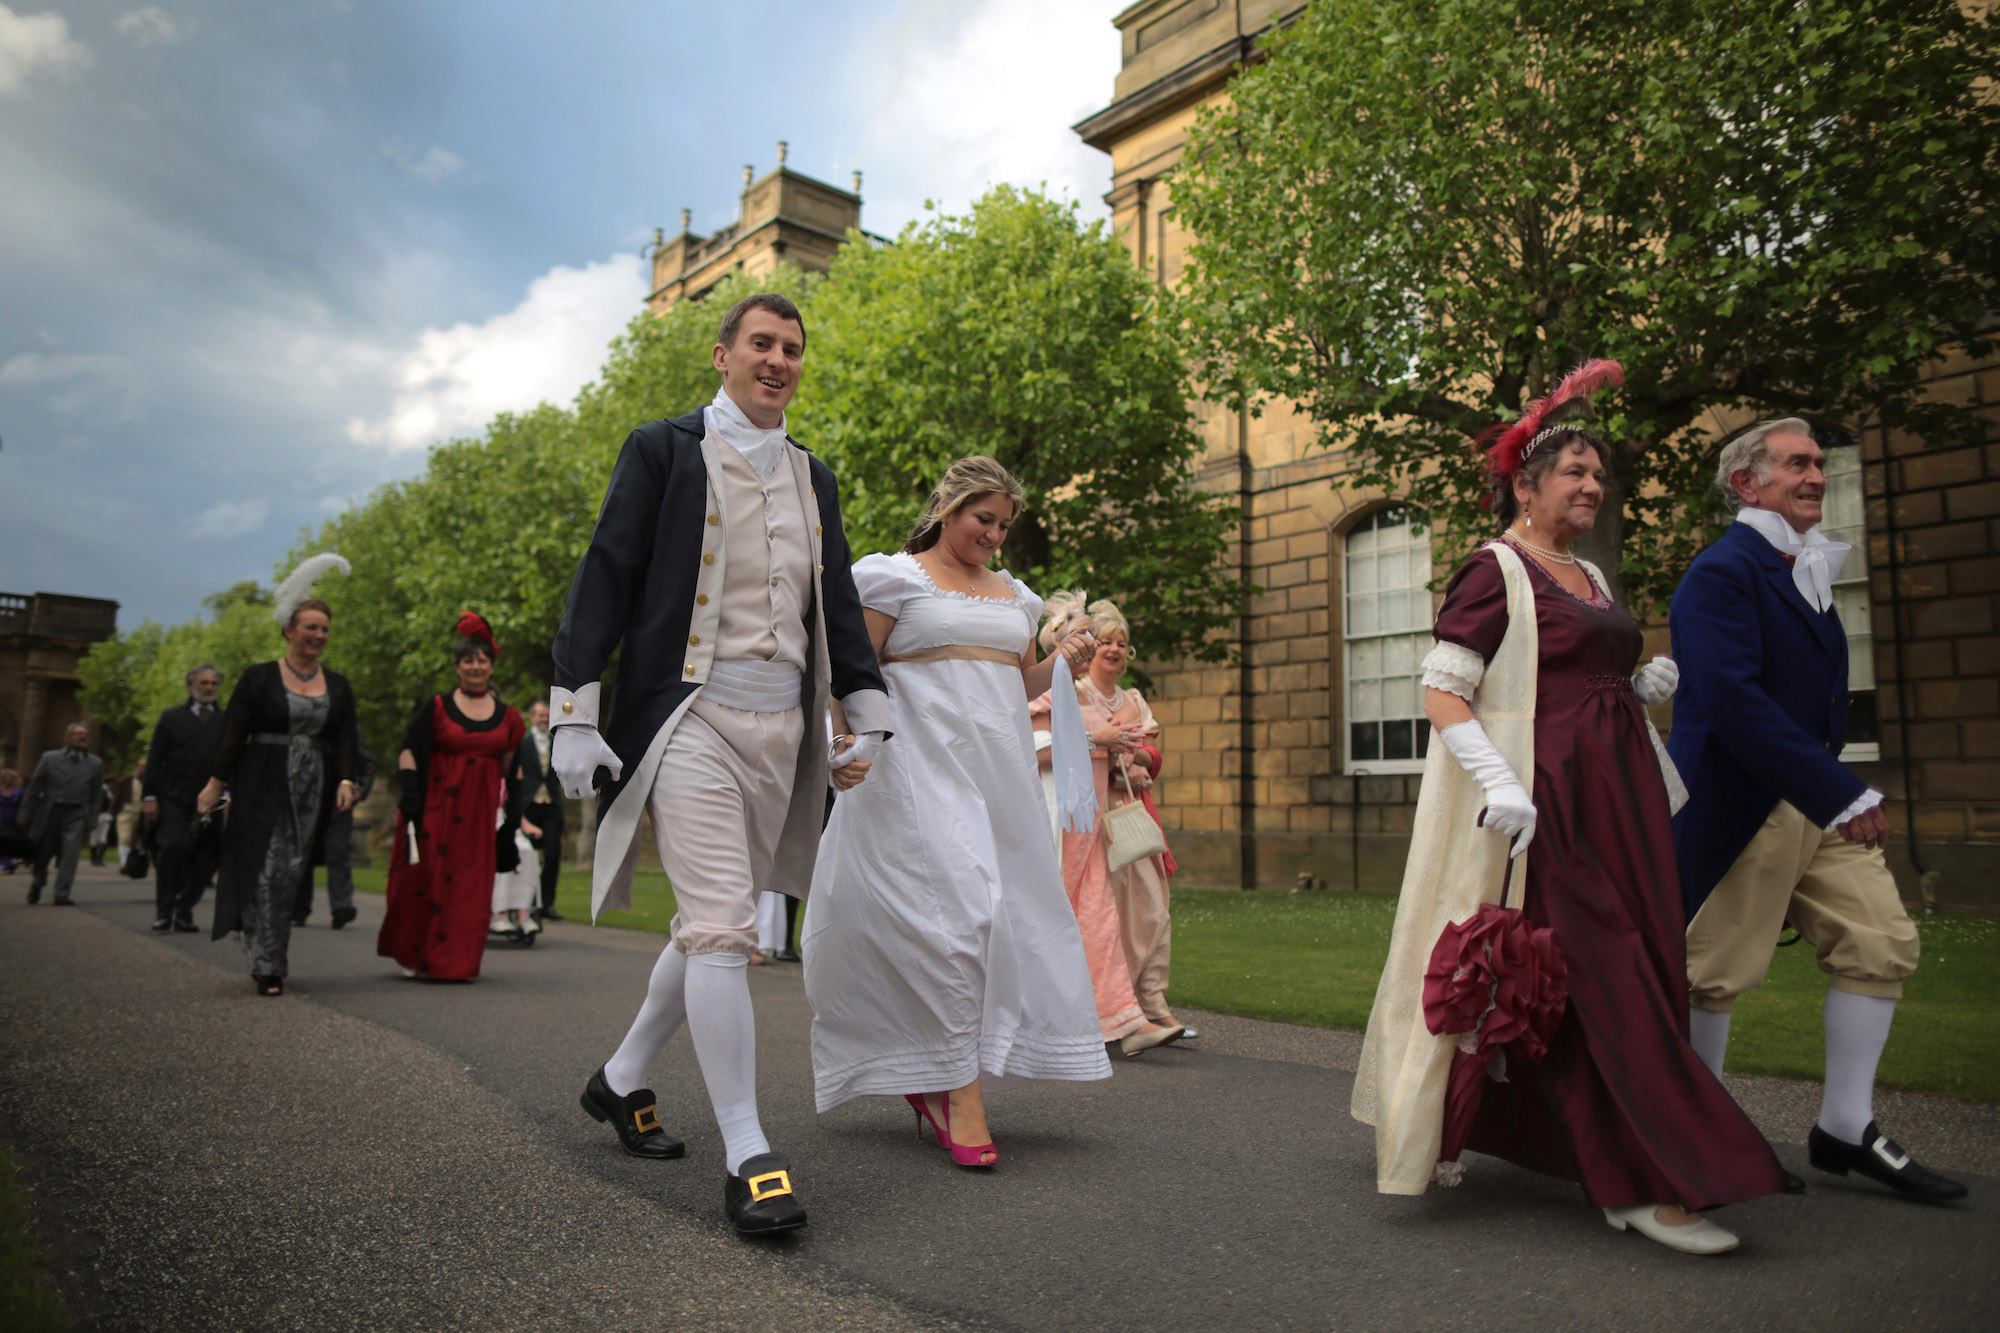 Những vị khách hóa trang đến dự vũ hội Kiêu hãnh và Định kiến tại Dinh thự Chatsworth ở Derbyshire Dales, Anh quốc, ngày 22/06/2013. Sự kiện này được tổ chức nhằm kỷ niệm 200 năm ngày xuất bản cuốn sách “Kiêu hãnh và Định kiến” (Pride and Prejudice) của tiểu thuyết gia Jane Austen. (Ảnh: Christopher Furlong/Getty Images)